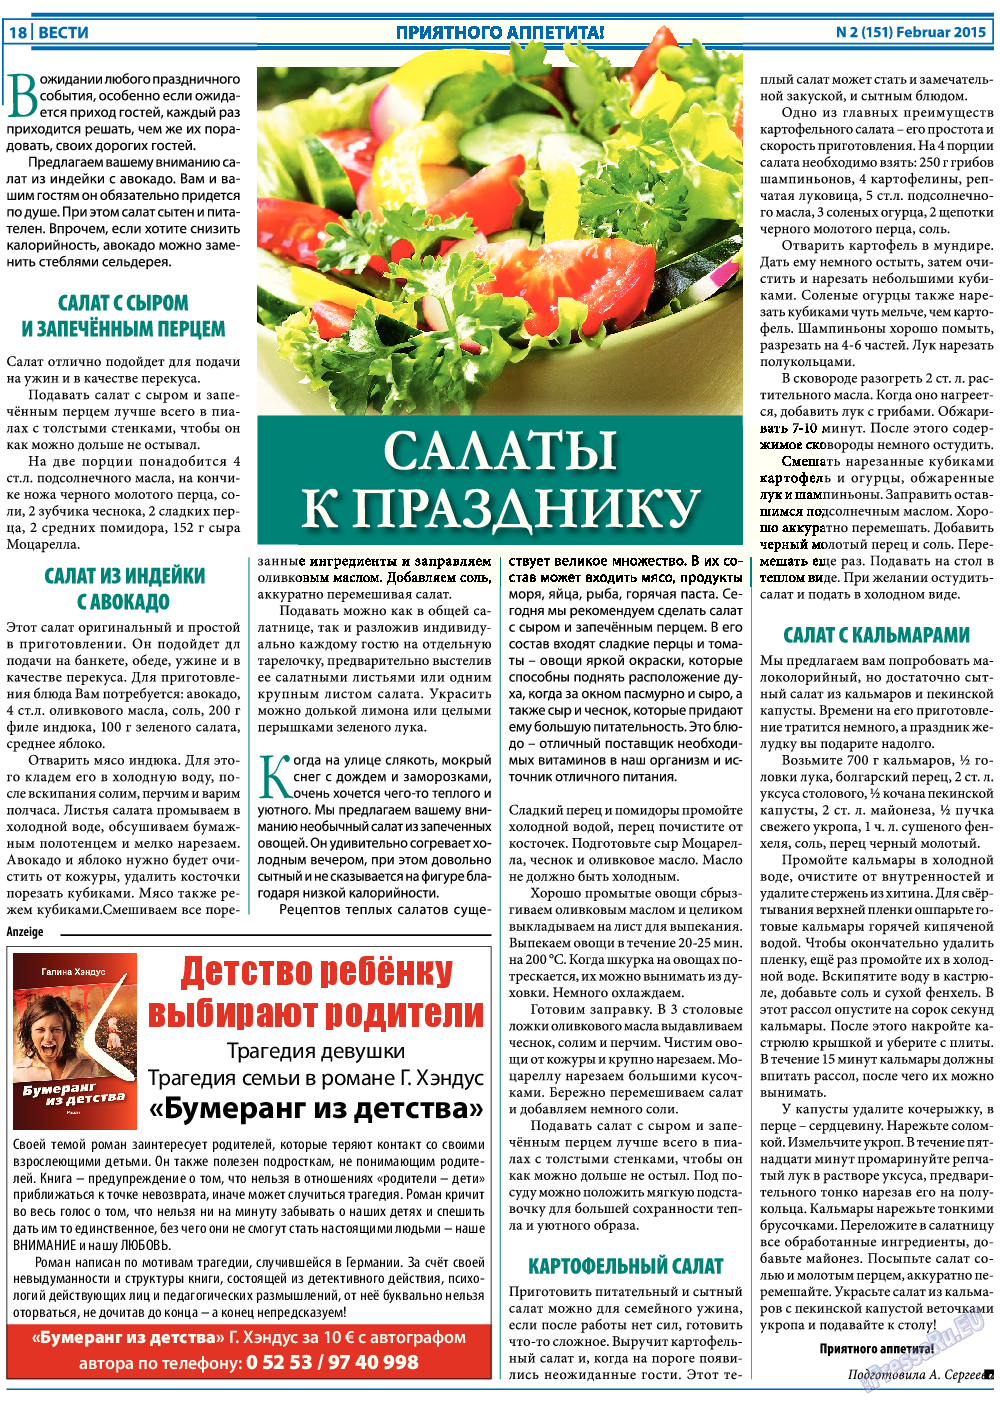 Вести, газета. 2015 №2 стр.18